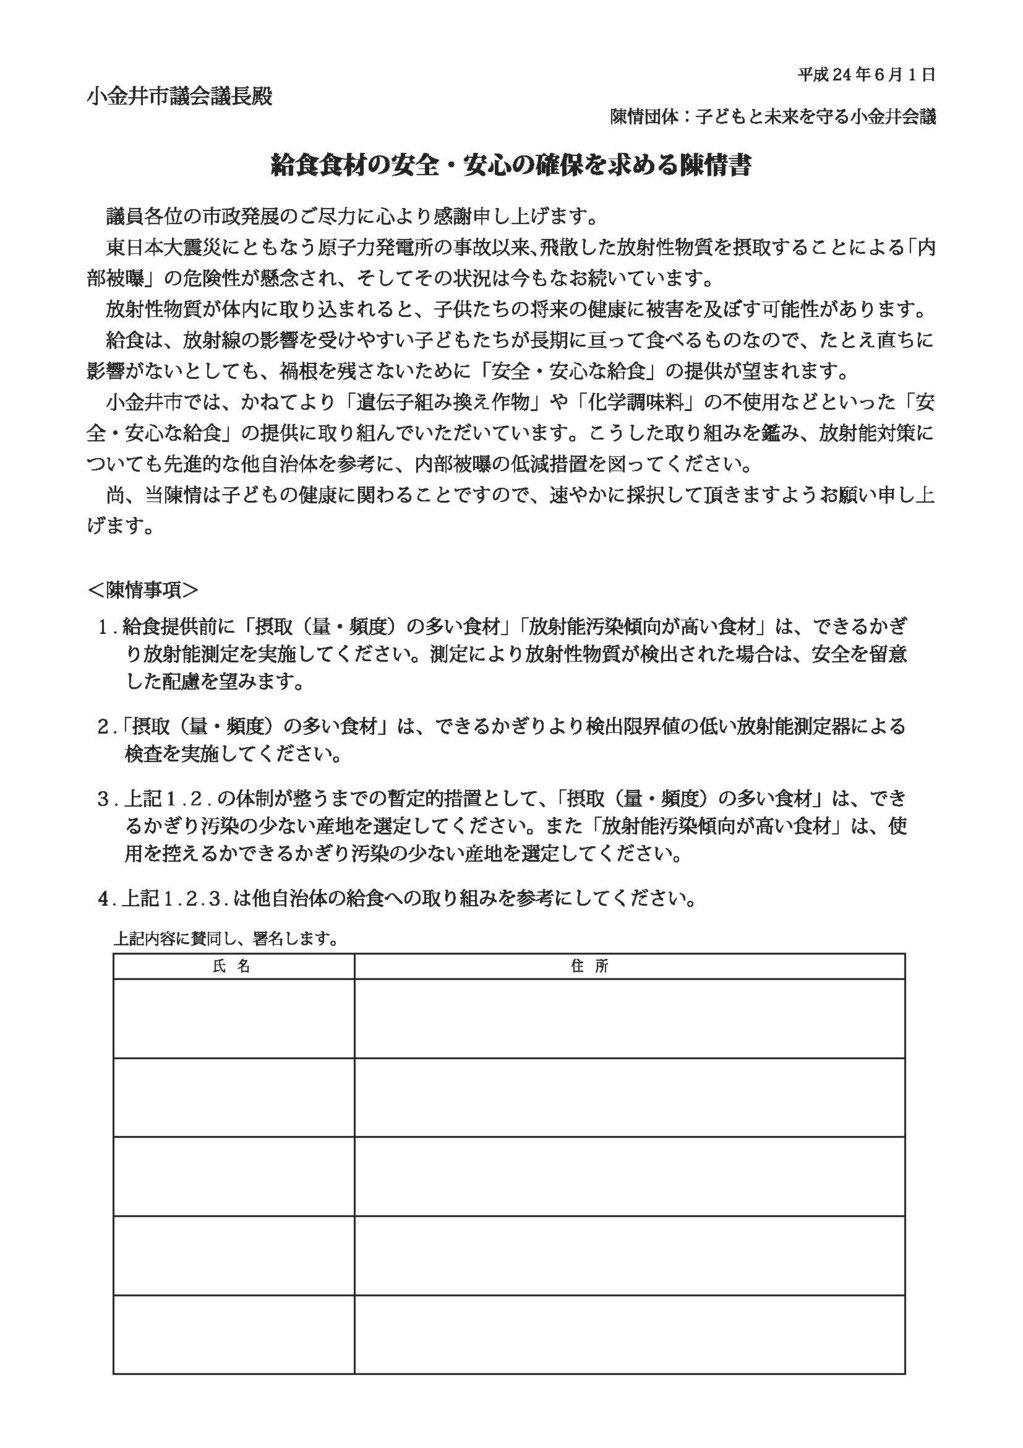 市に提出された文書 陳情書 要望書など Koganei Kyuusyoku ページ